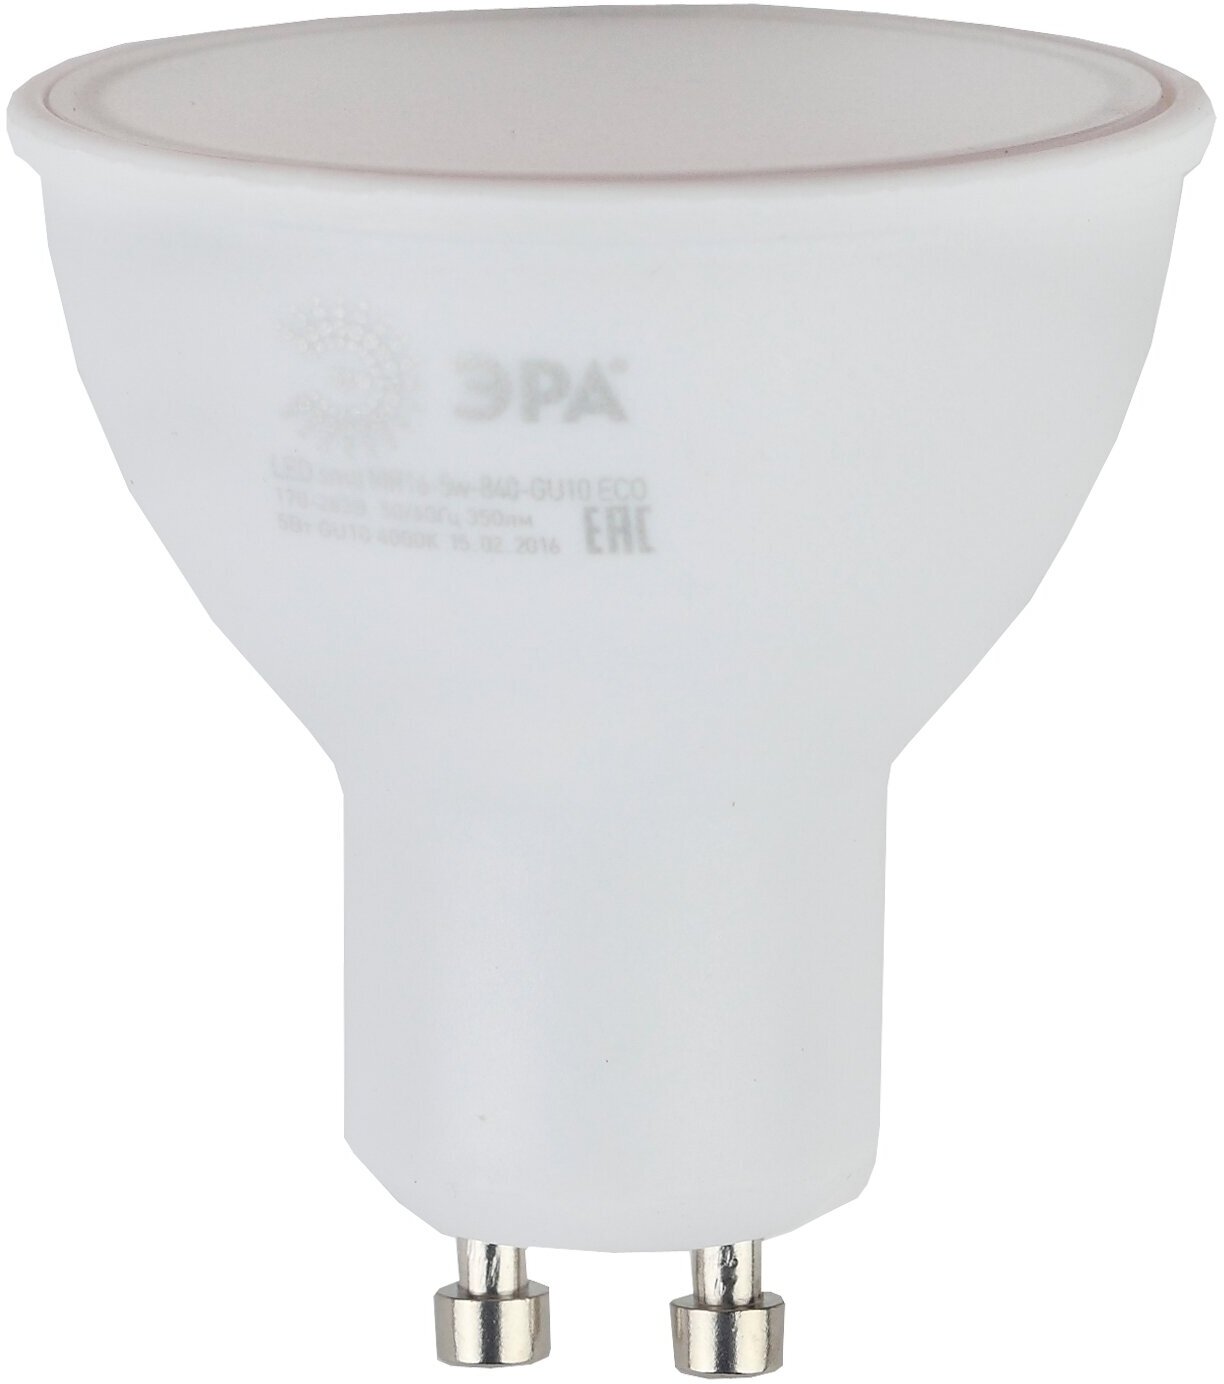 ЭРА Лампочка светодиодная RED LINE LED MR16-5W-840-GU10 R софит нейтральный белый свет Б0050689